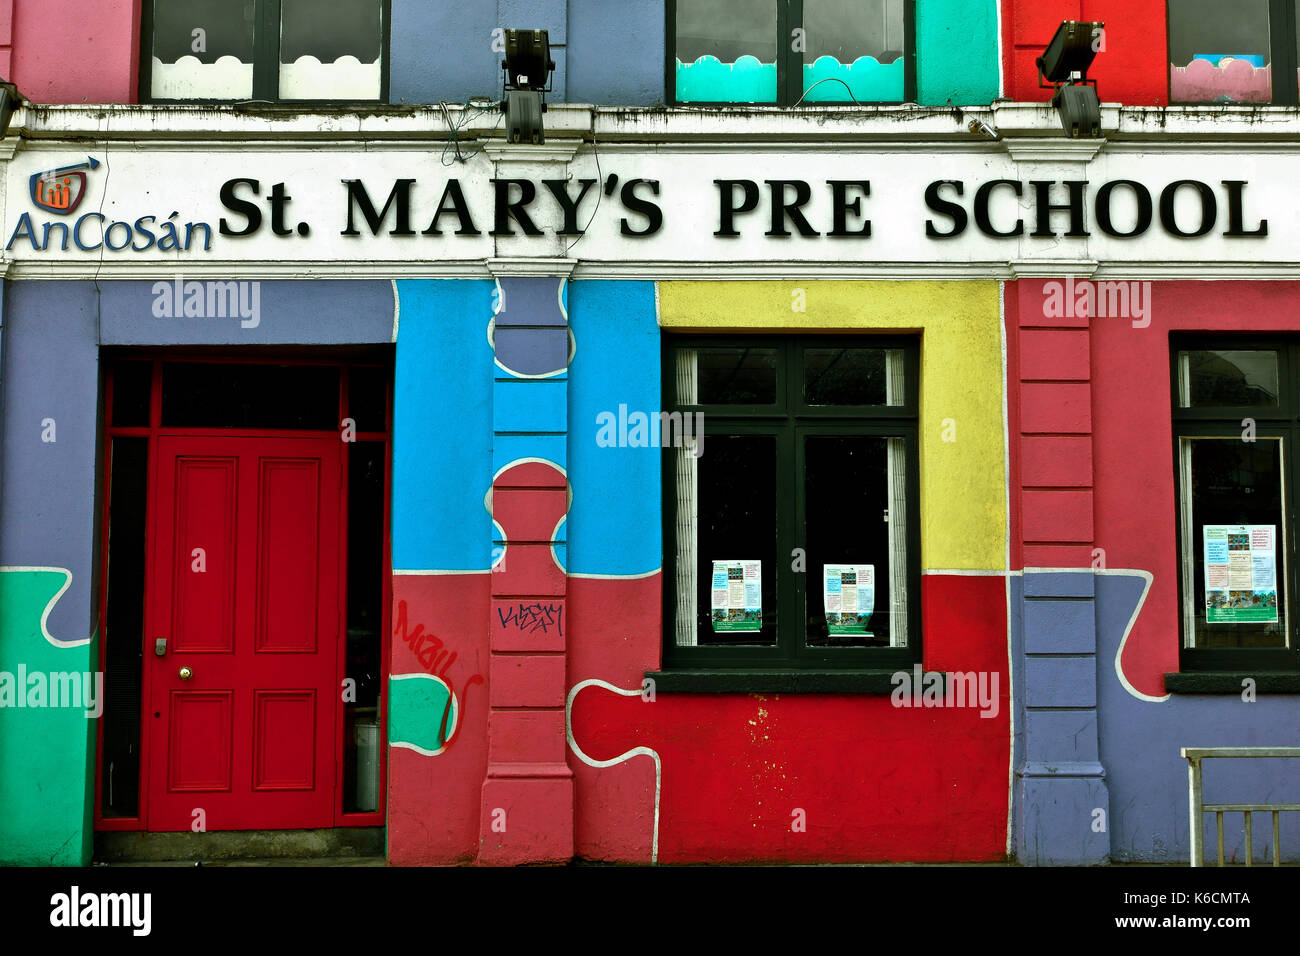 St. Mary's Pre-School bunte Fassade. Jigsaw Gebäude am City Quay. Dublin, Irland, Europa, Europäische Union, EU. Stockfoto